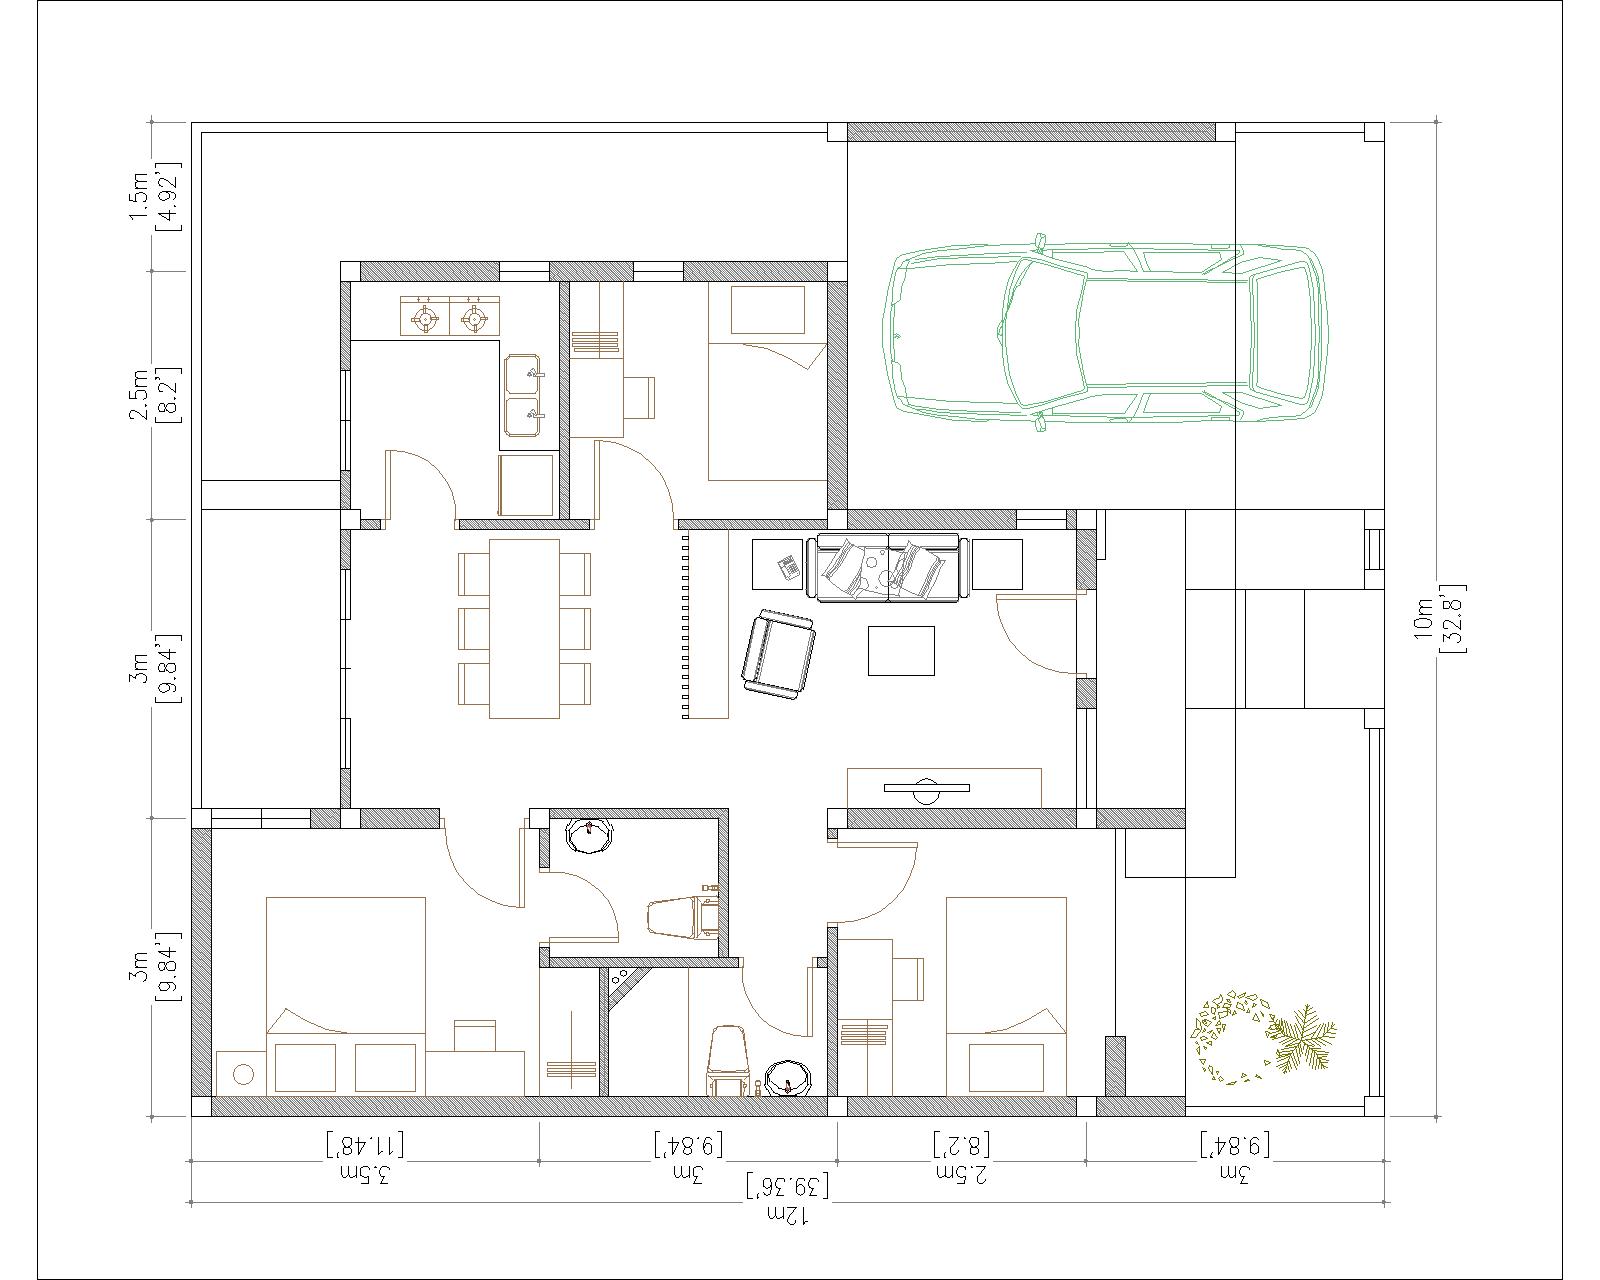 House Design 10x12 meter 33x40 Feet 3 Beds